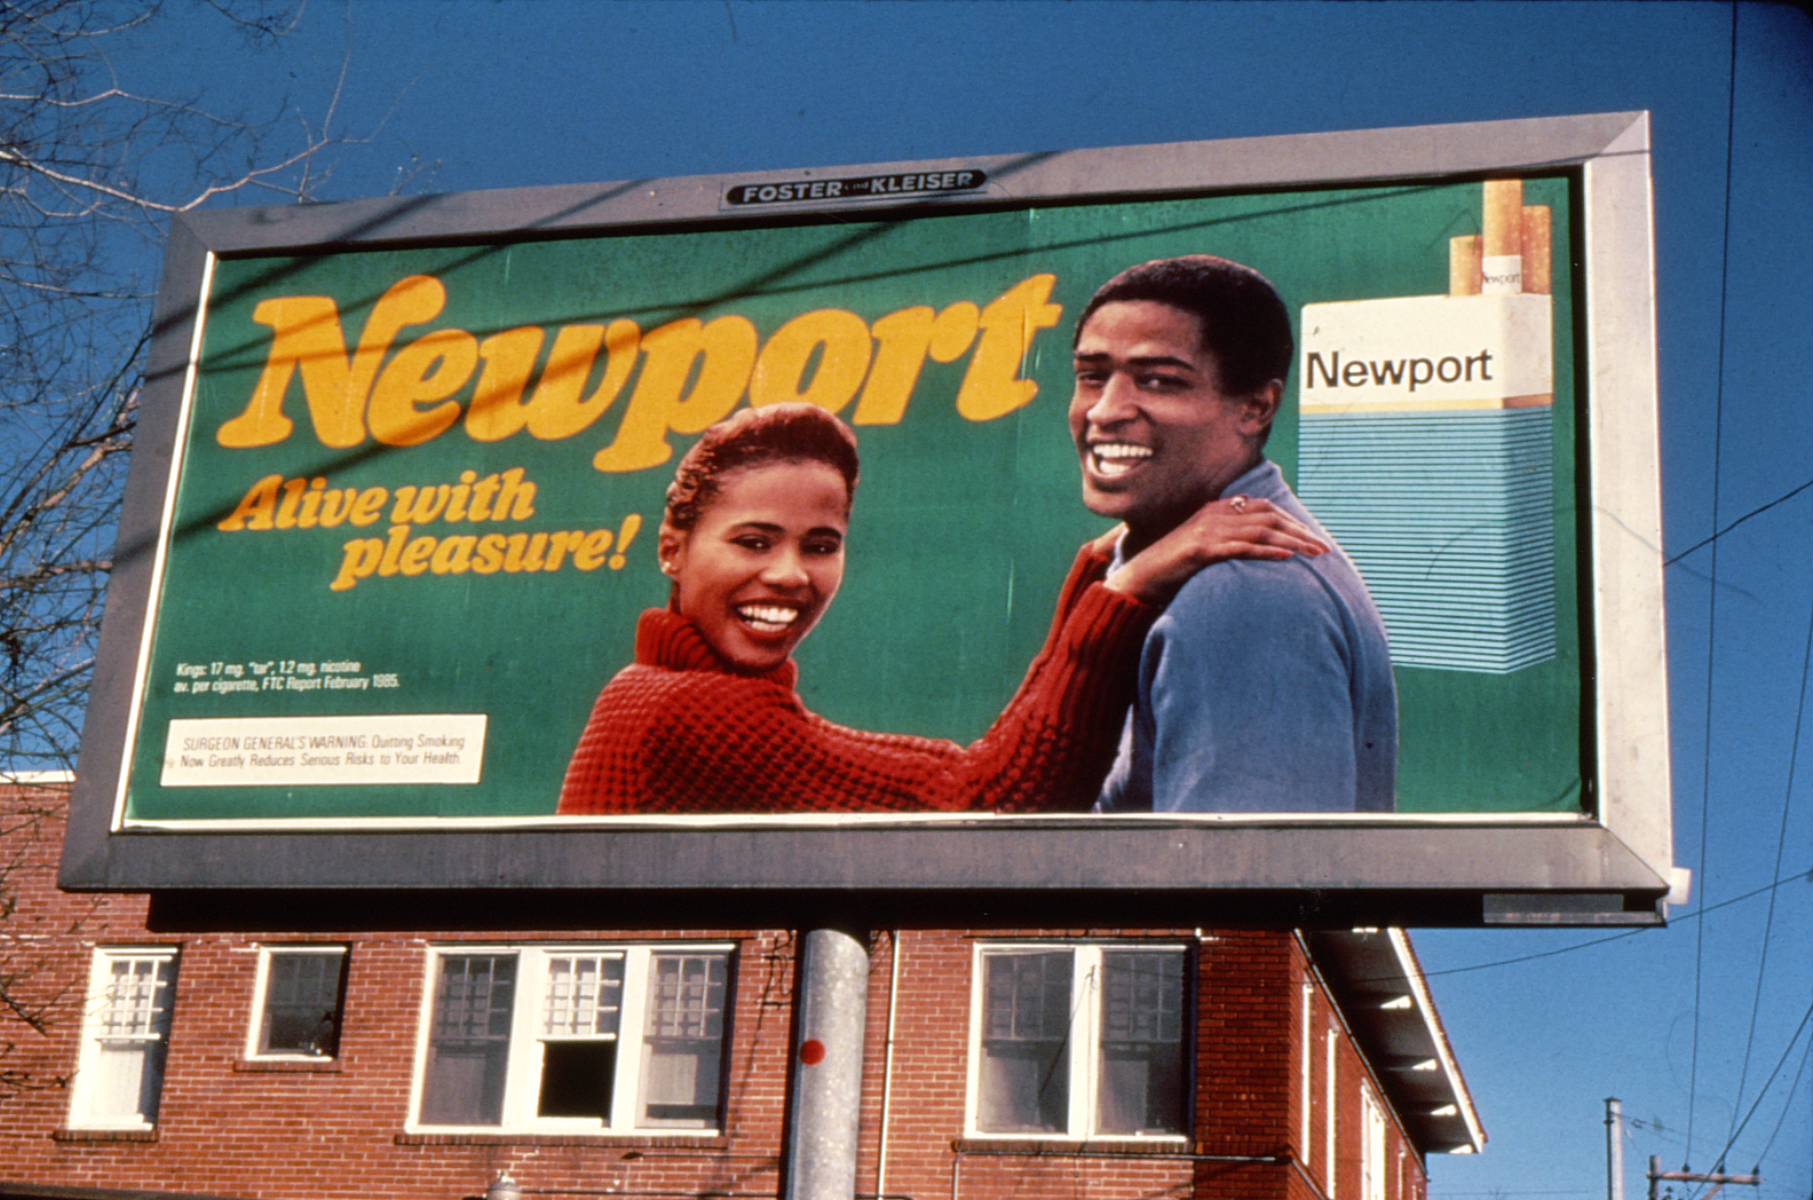 1987-Newport-Billboard-Alive-With-Pleasure